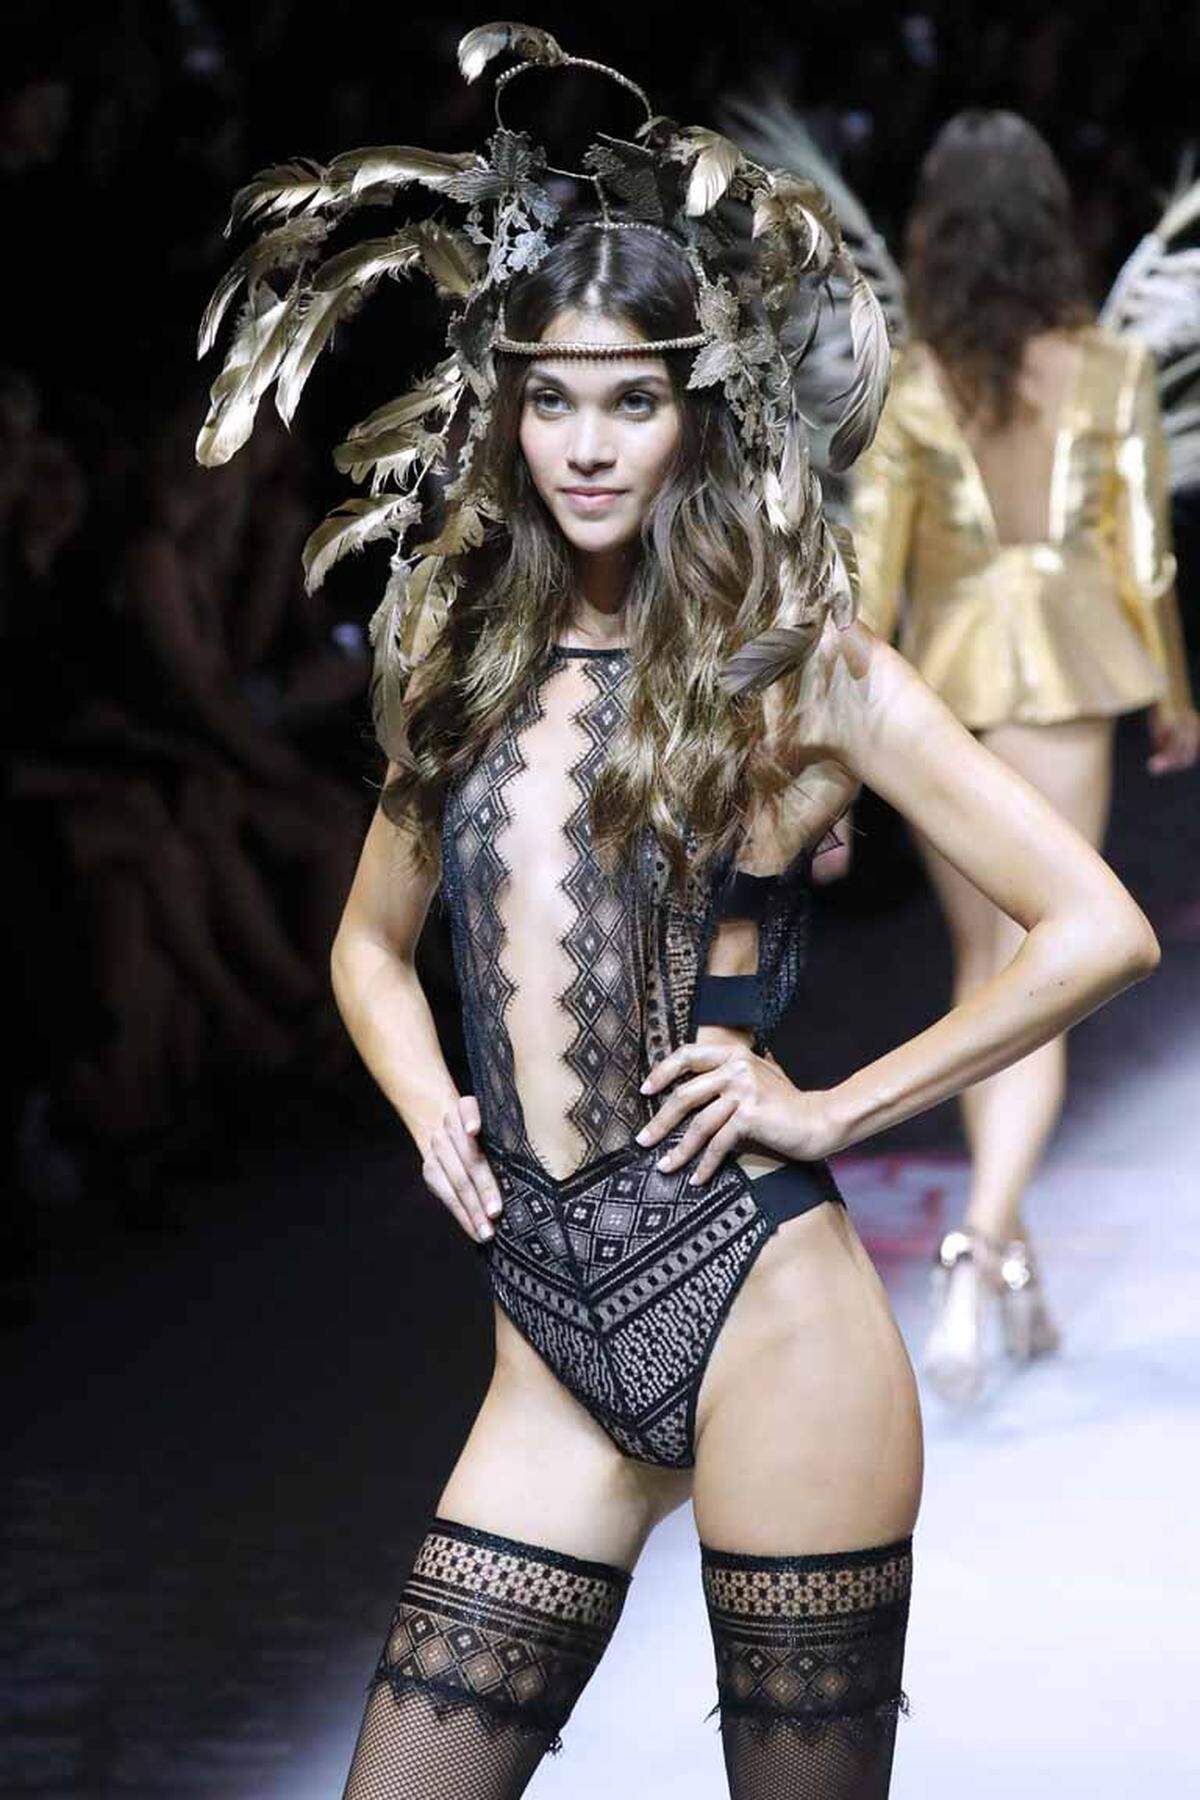 Ganz nach dem Vorbild von Victoria's Secret zeigte das französische Unterwäschelabel Etam im Zuge der Pariser Modewochen eine aufwendige Show.